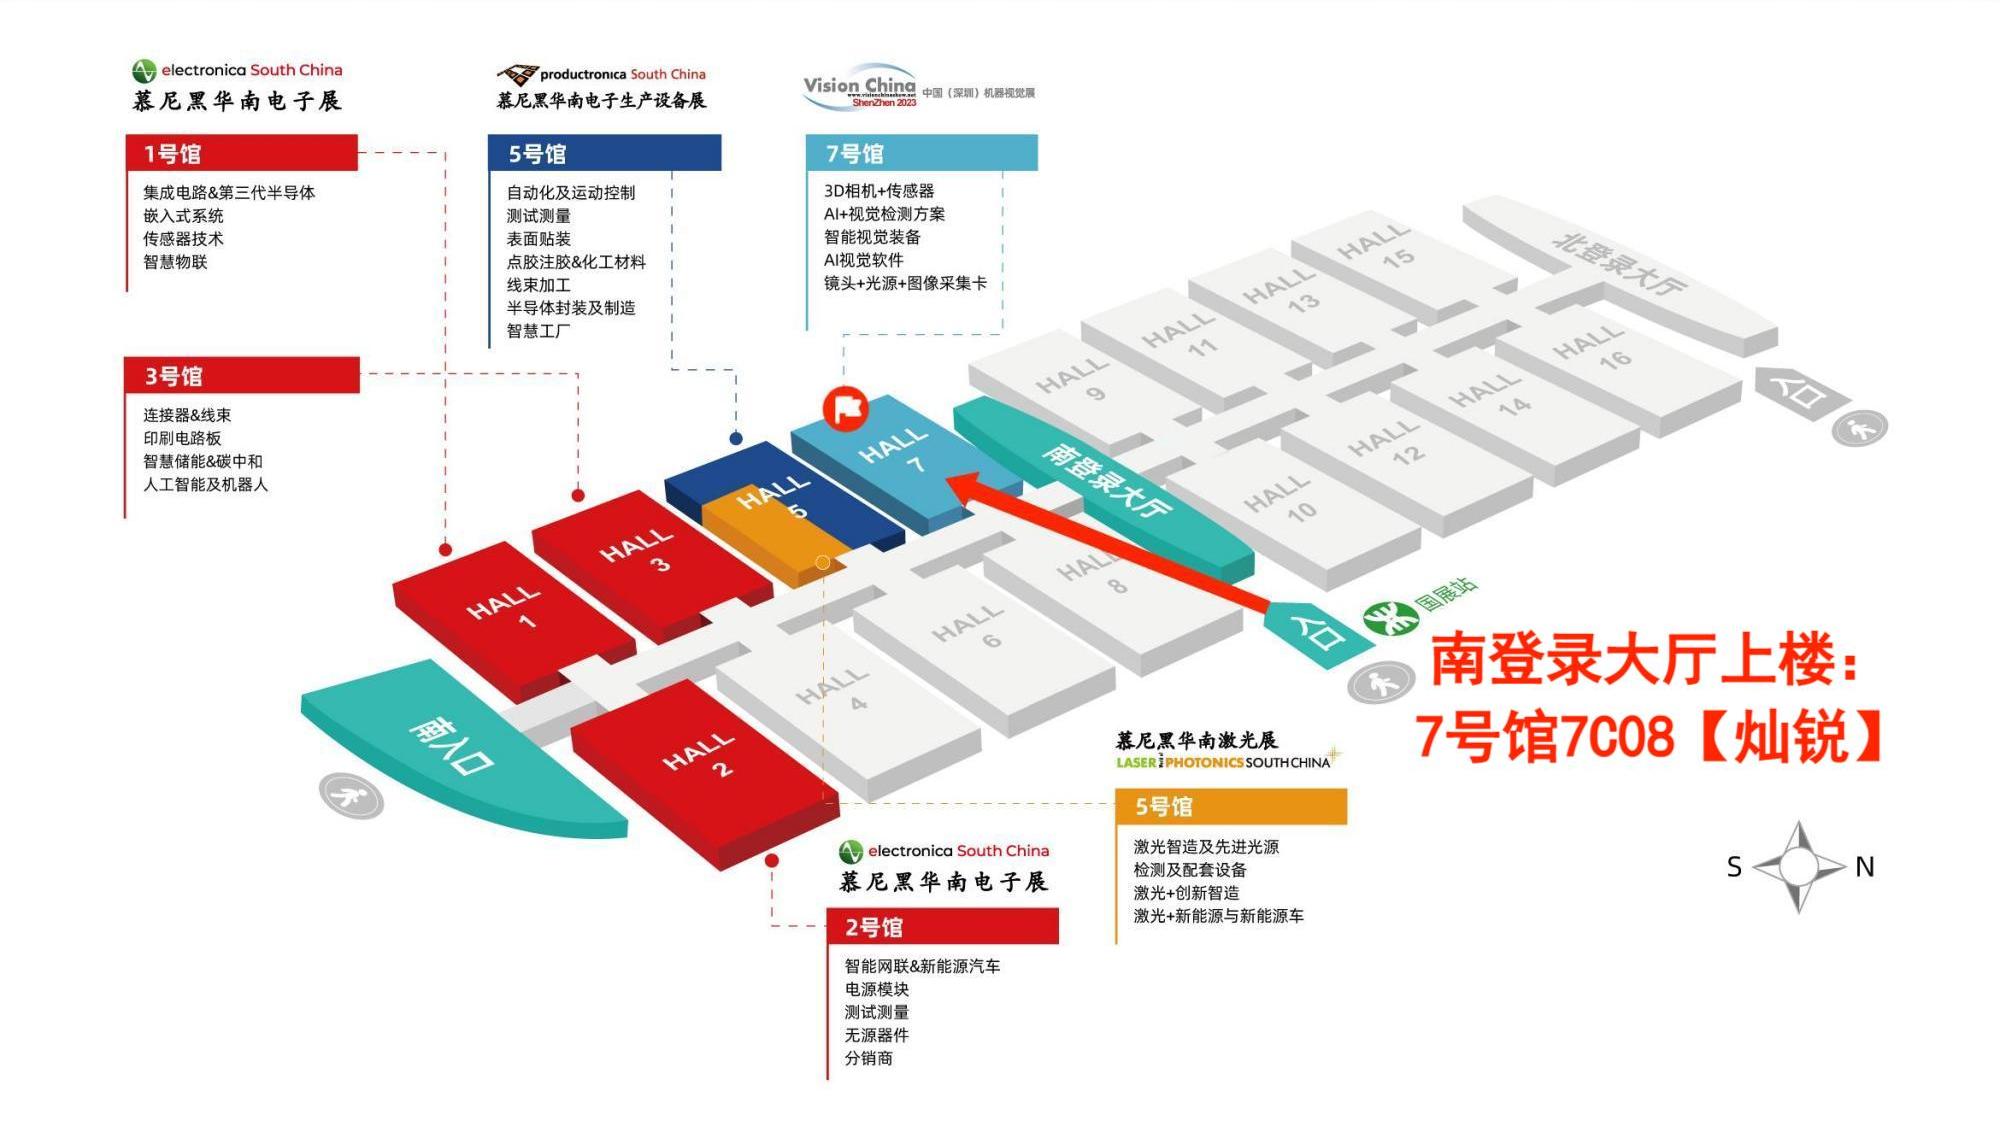 深圳机器视觉展-1展馆规划图10月30日-11月1日.jpg